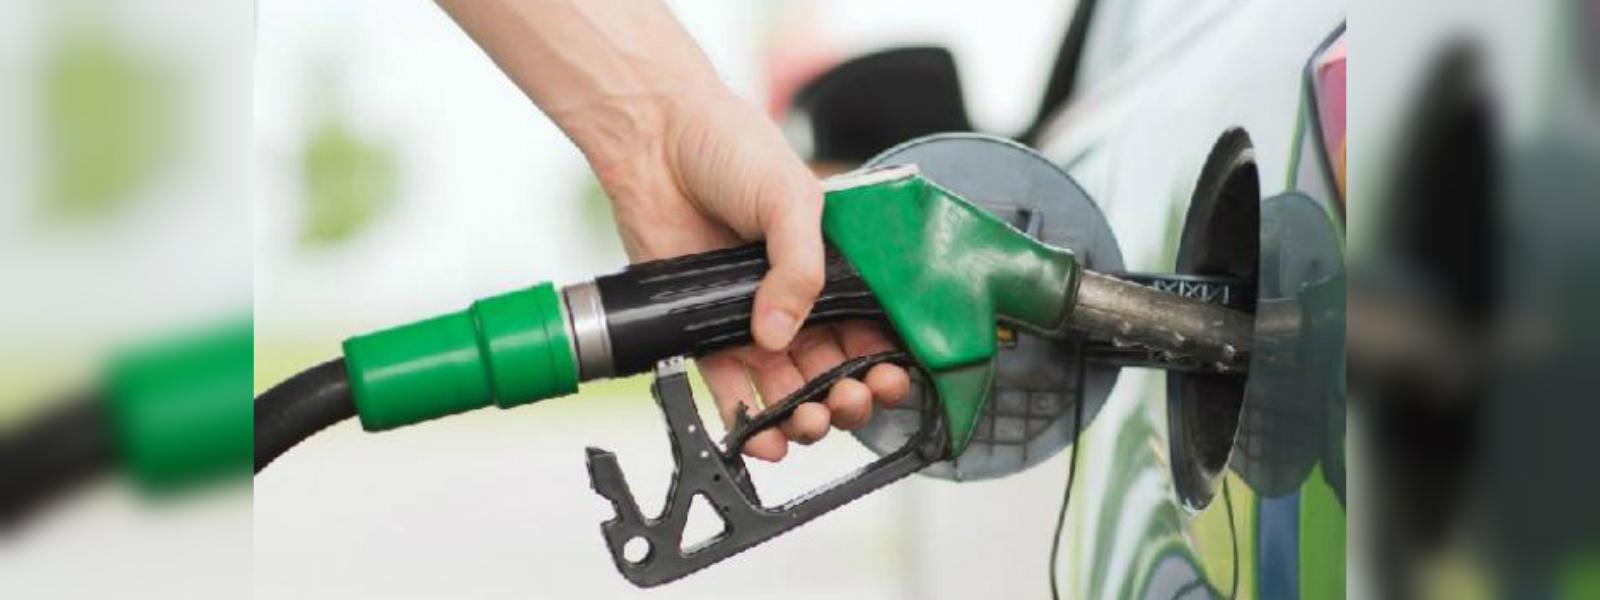 Petrol and Super diesel prices increased